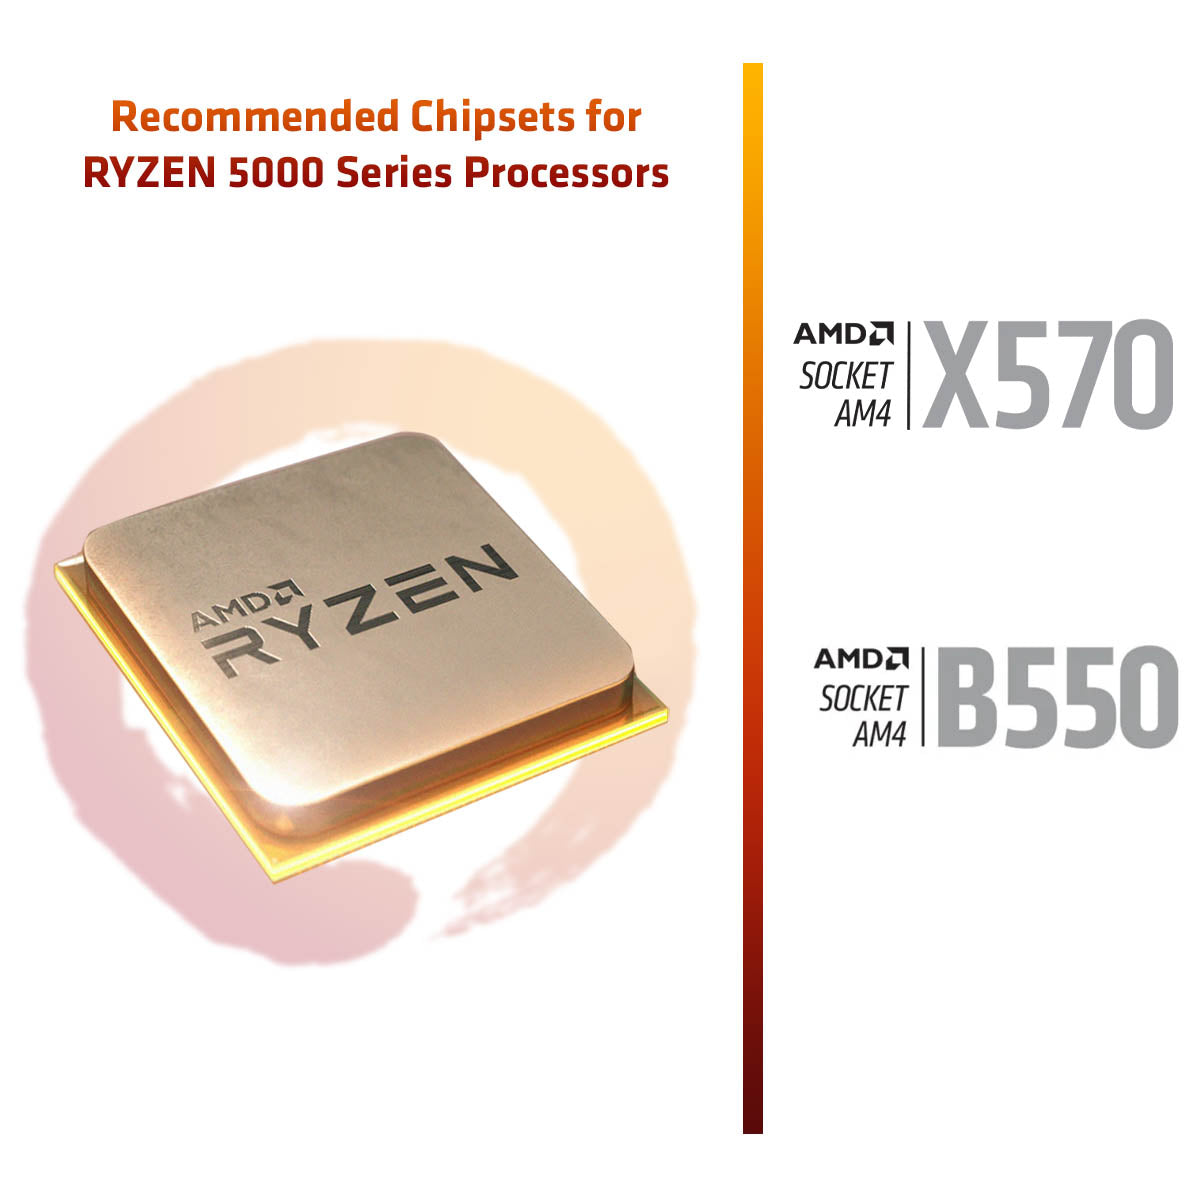 AMD RYZEN 9 5900X CPU From TPSTECH.in